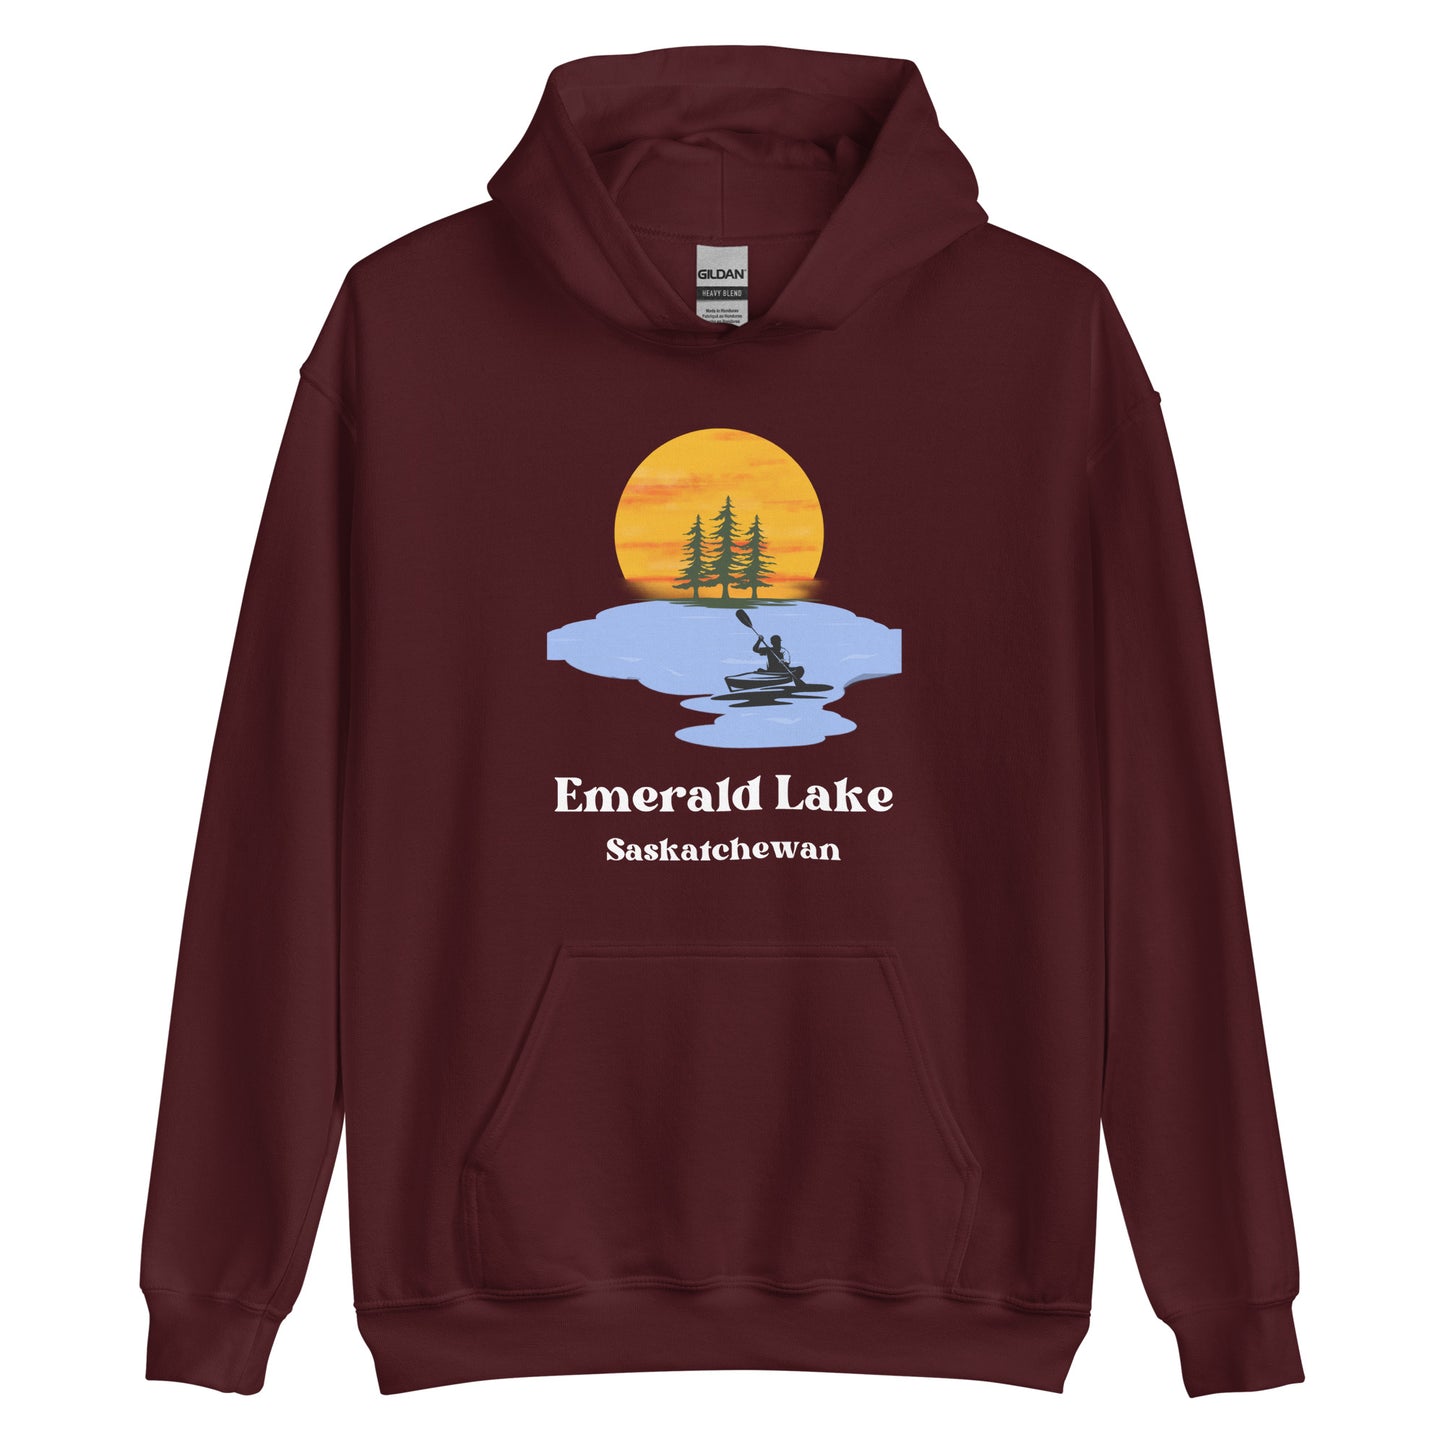 Emerald Lake, SK - Unisex Hoodie - Kayak